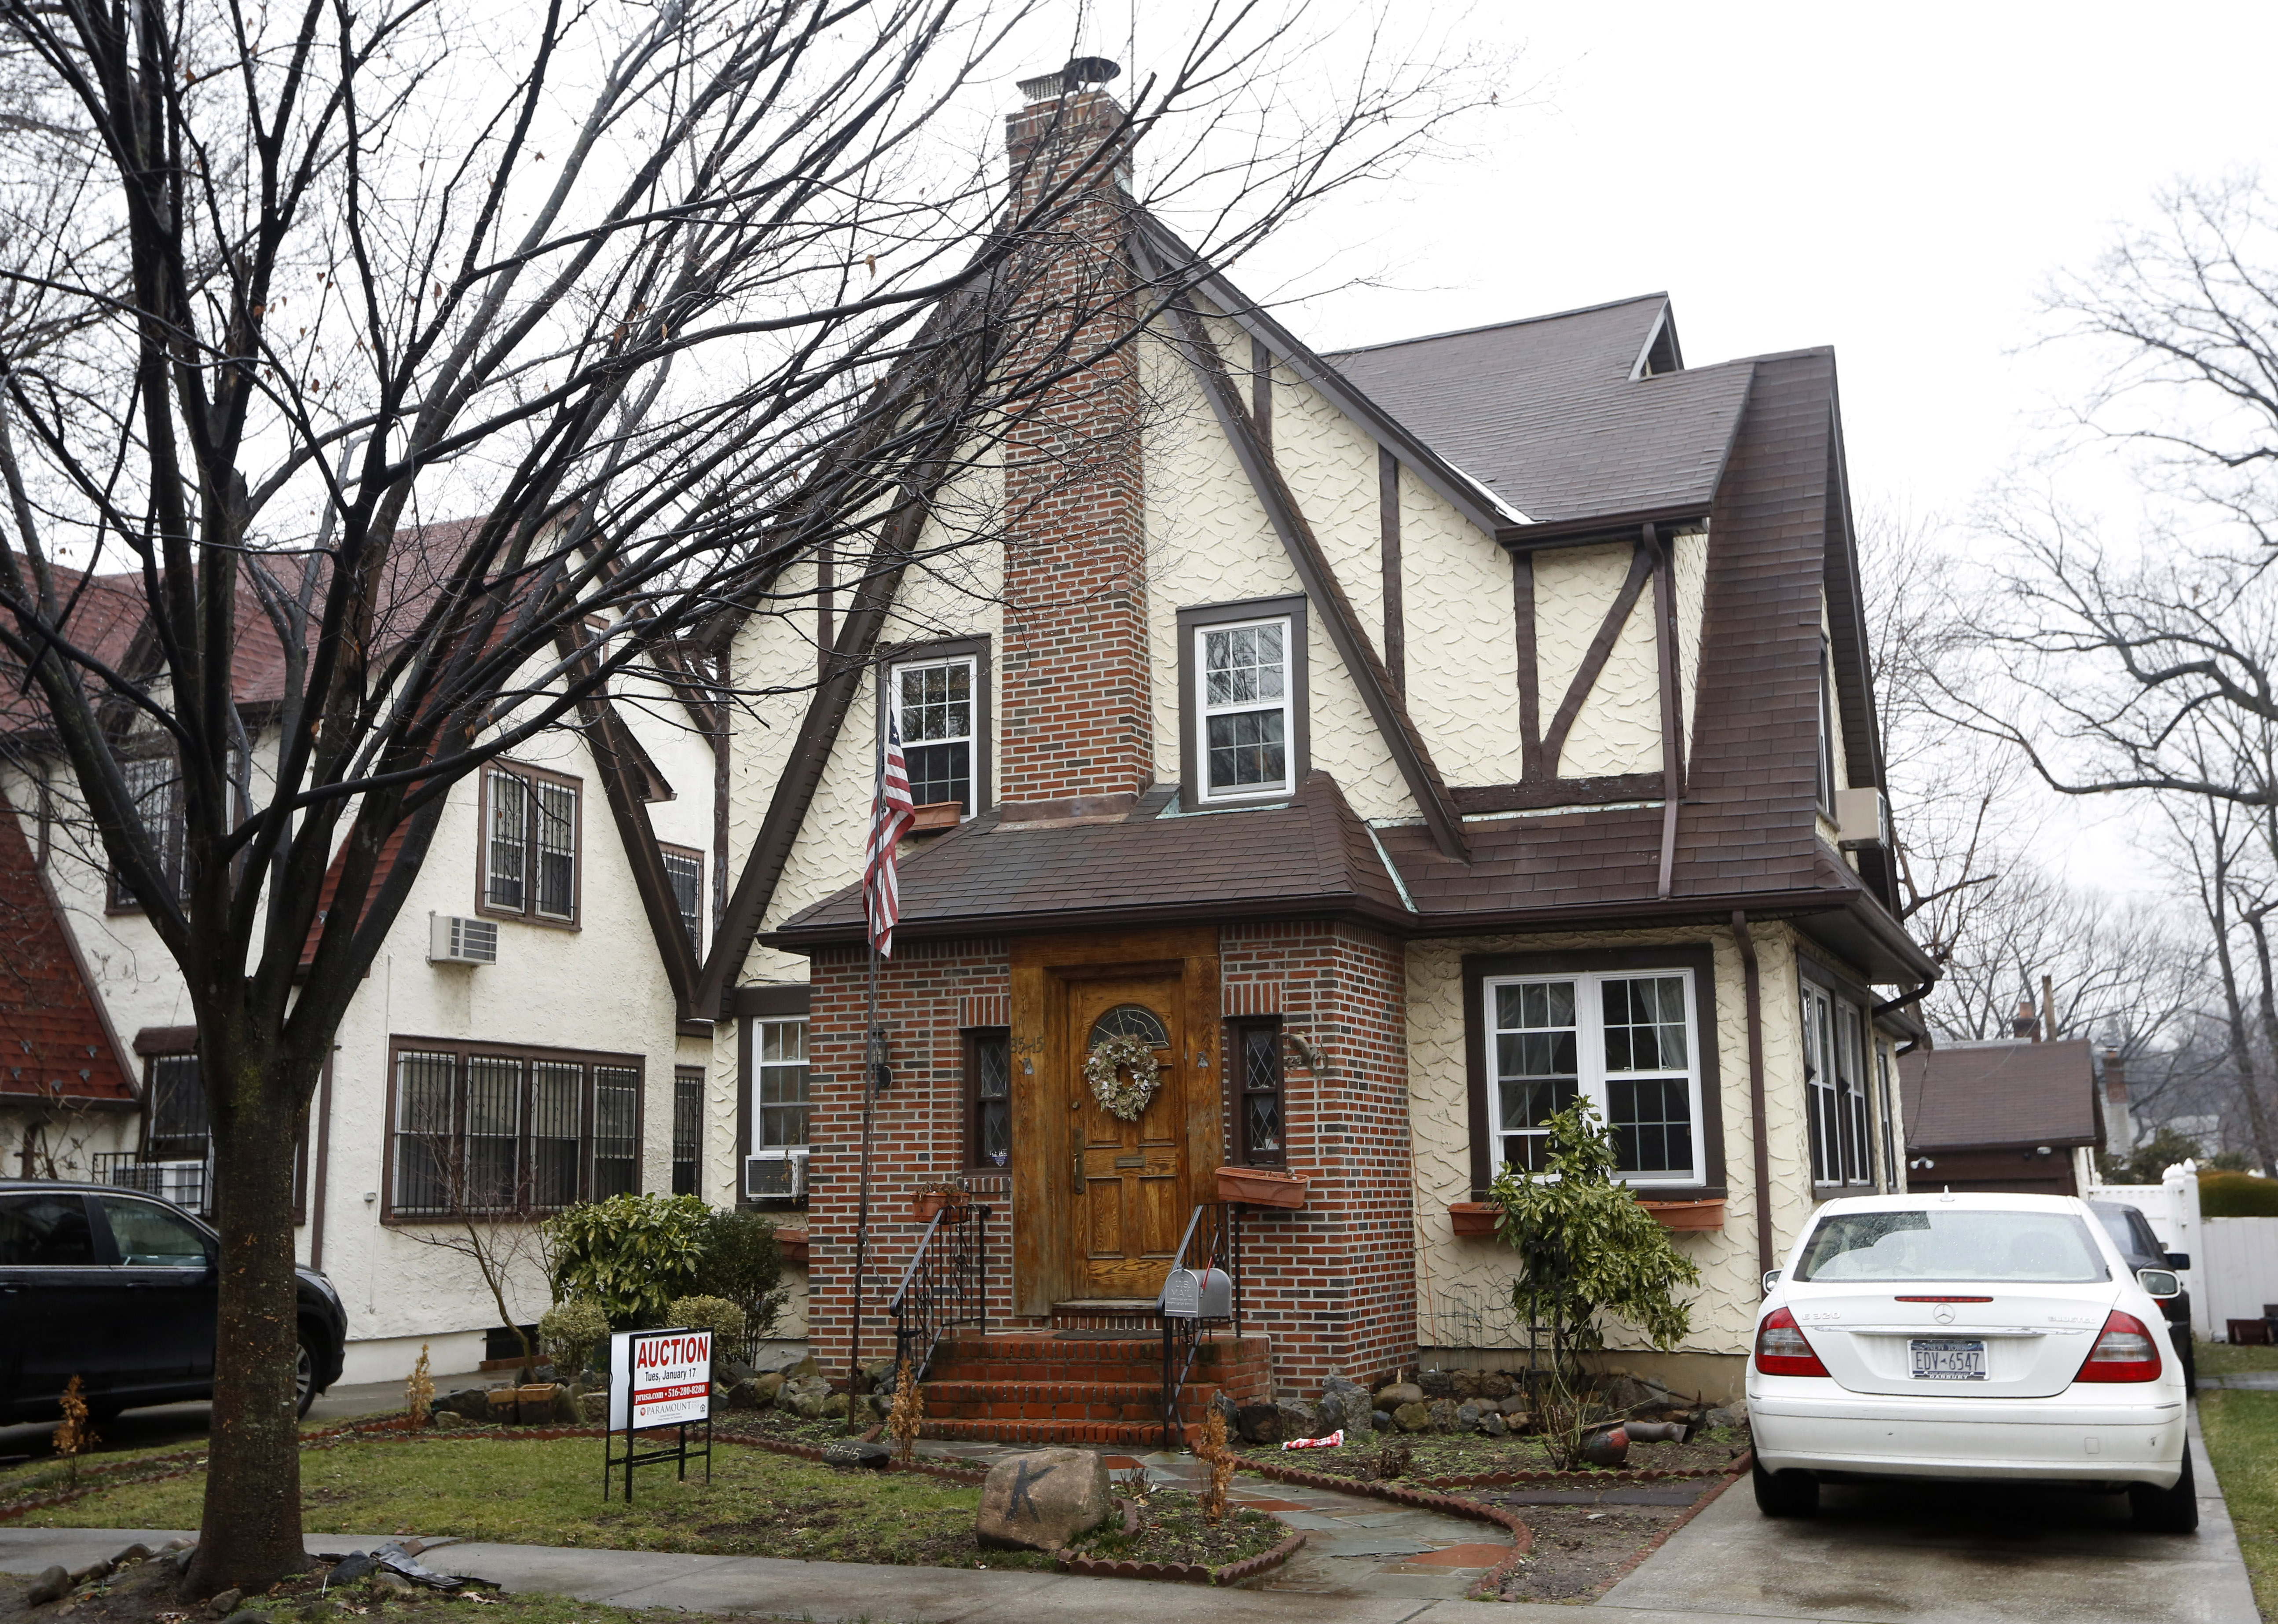 Продават на търг къща от детството на Доналд Тръмп в Куинс, Ню Йорк